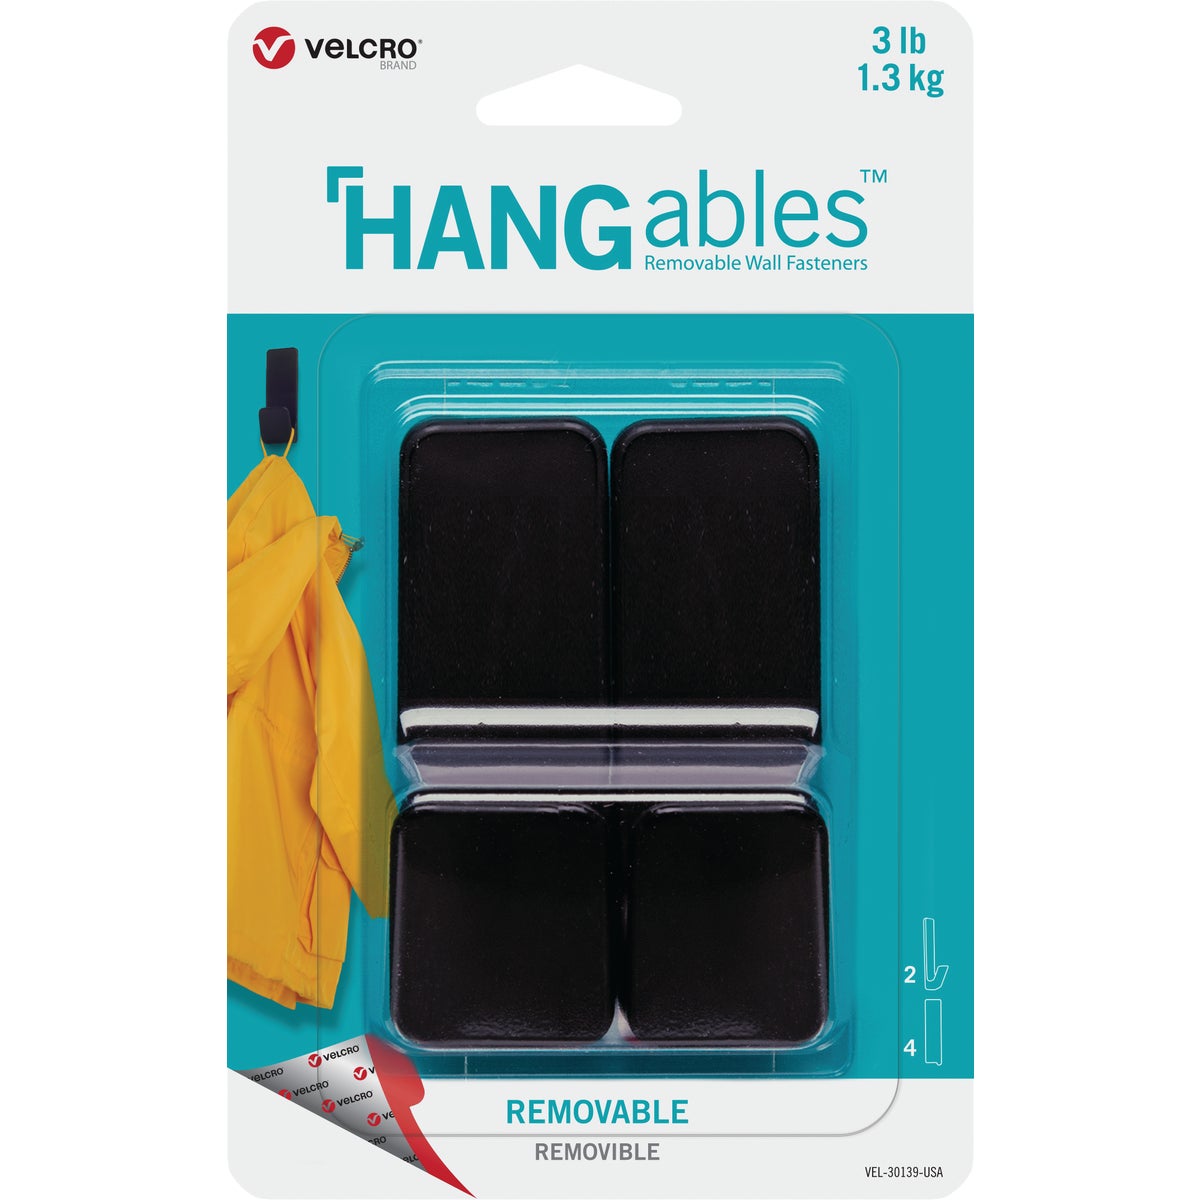 Hangables VELCRO Brand VEL-30139-USA